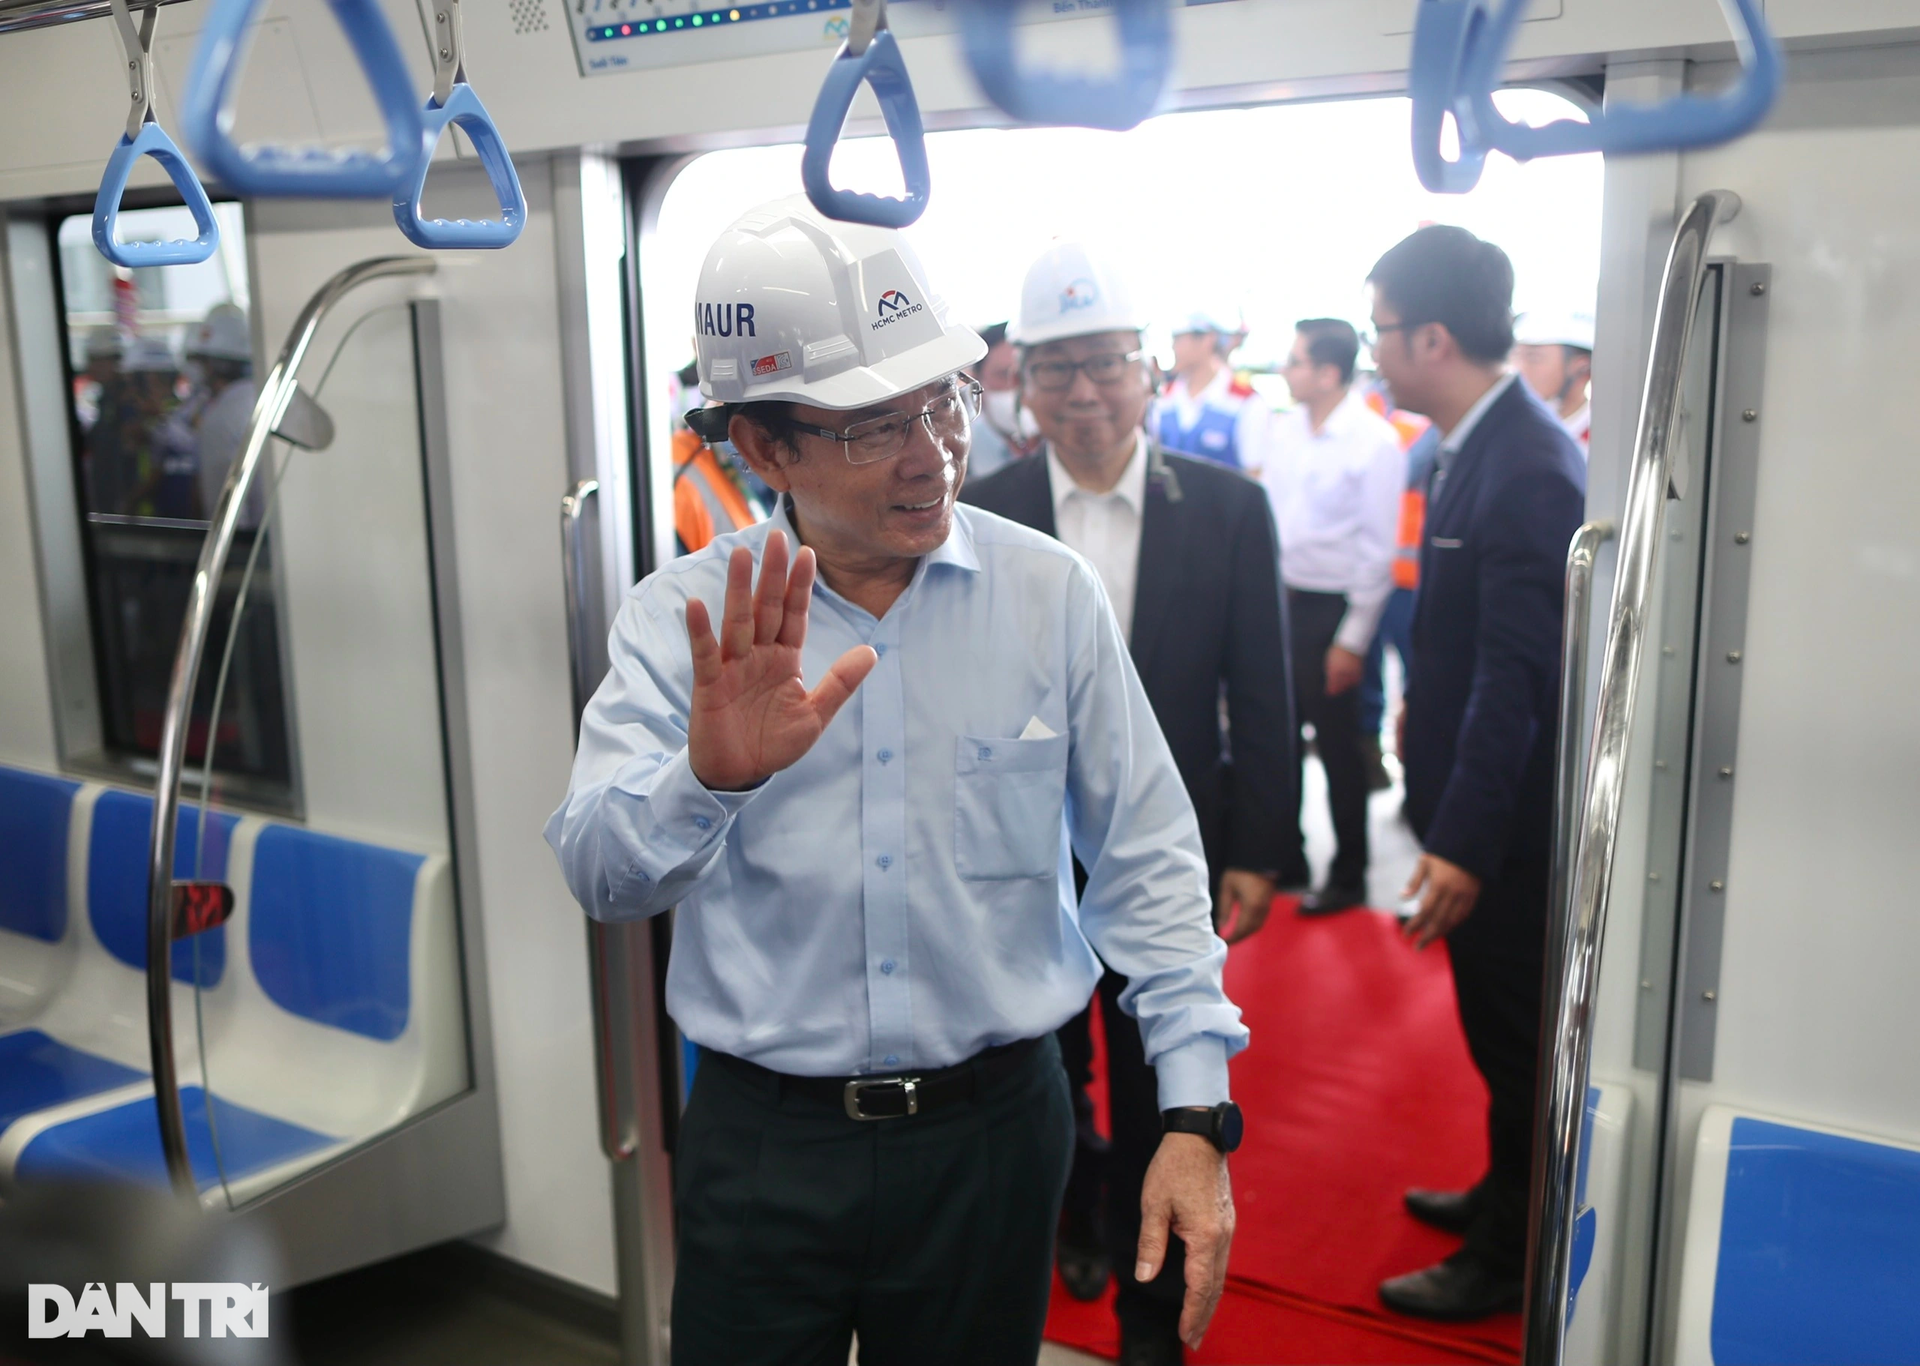 Người dân TPHCM hào hứng thử nghiệm tàu metro số 1 Bến Thành - Suối Tiên - 3